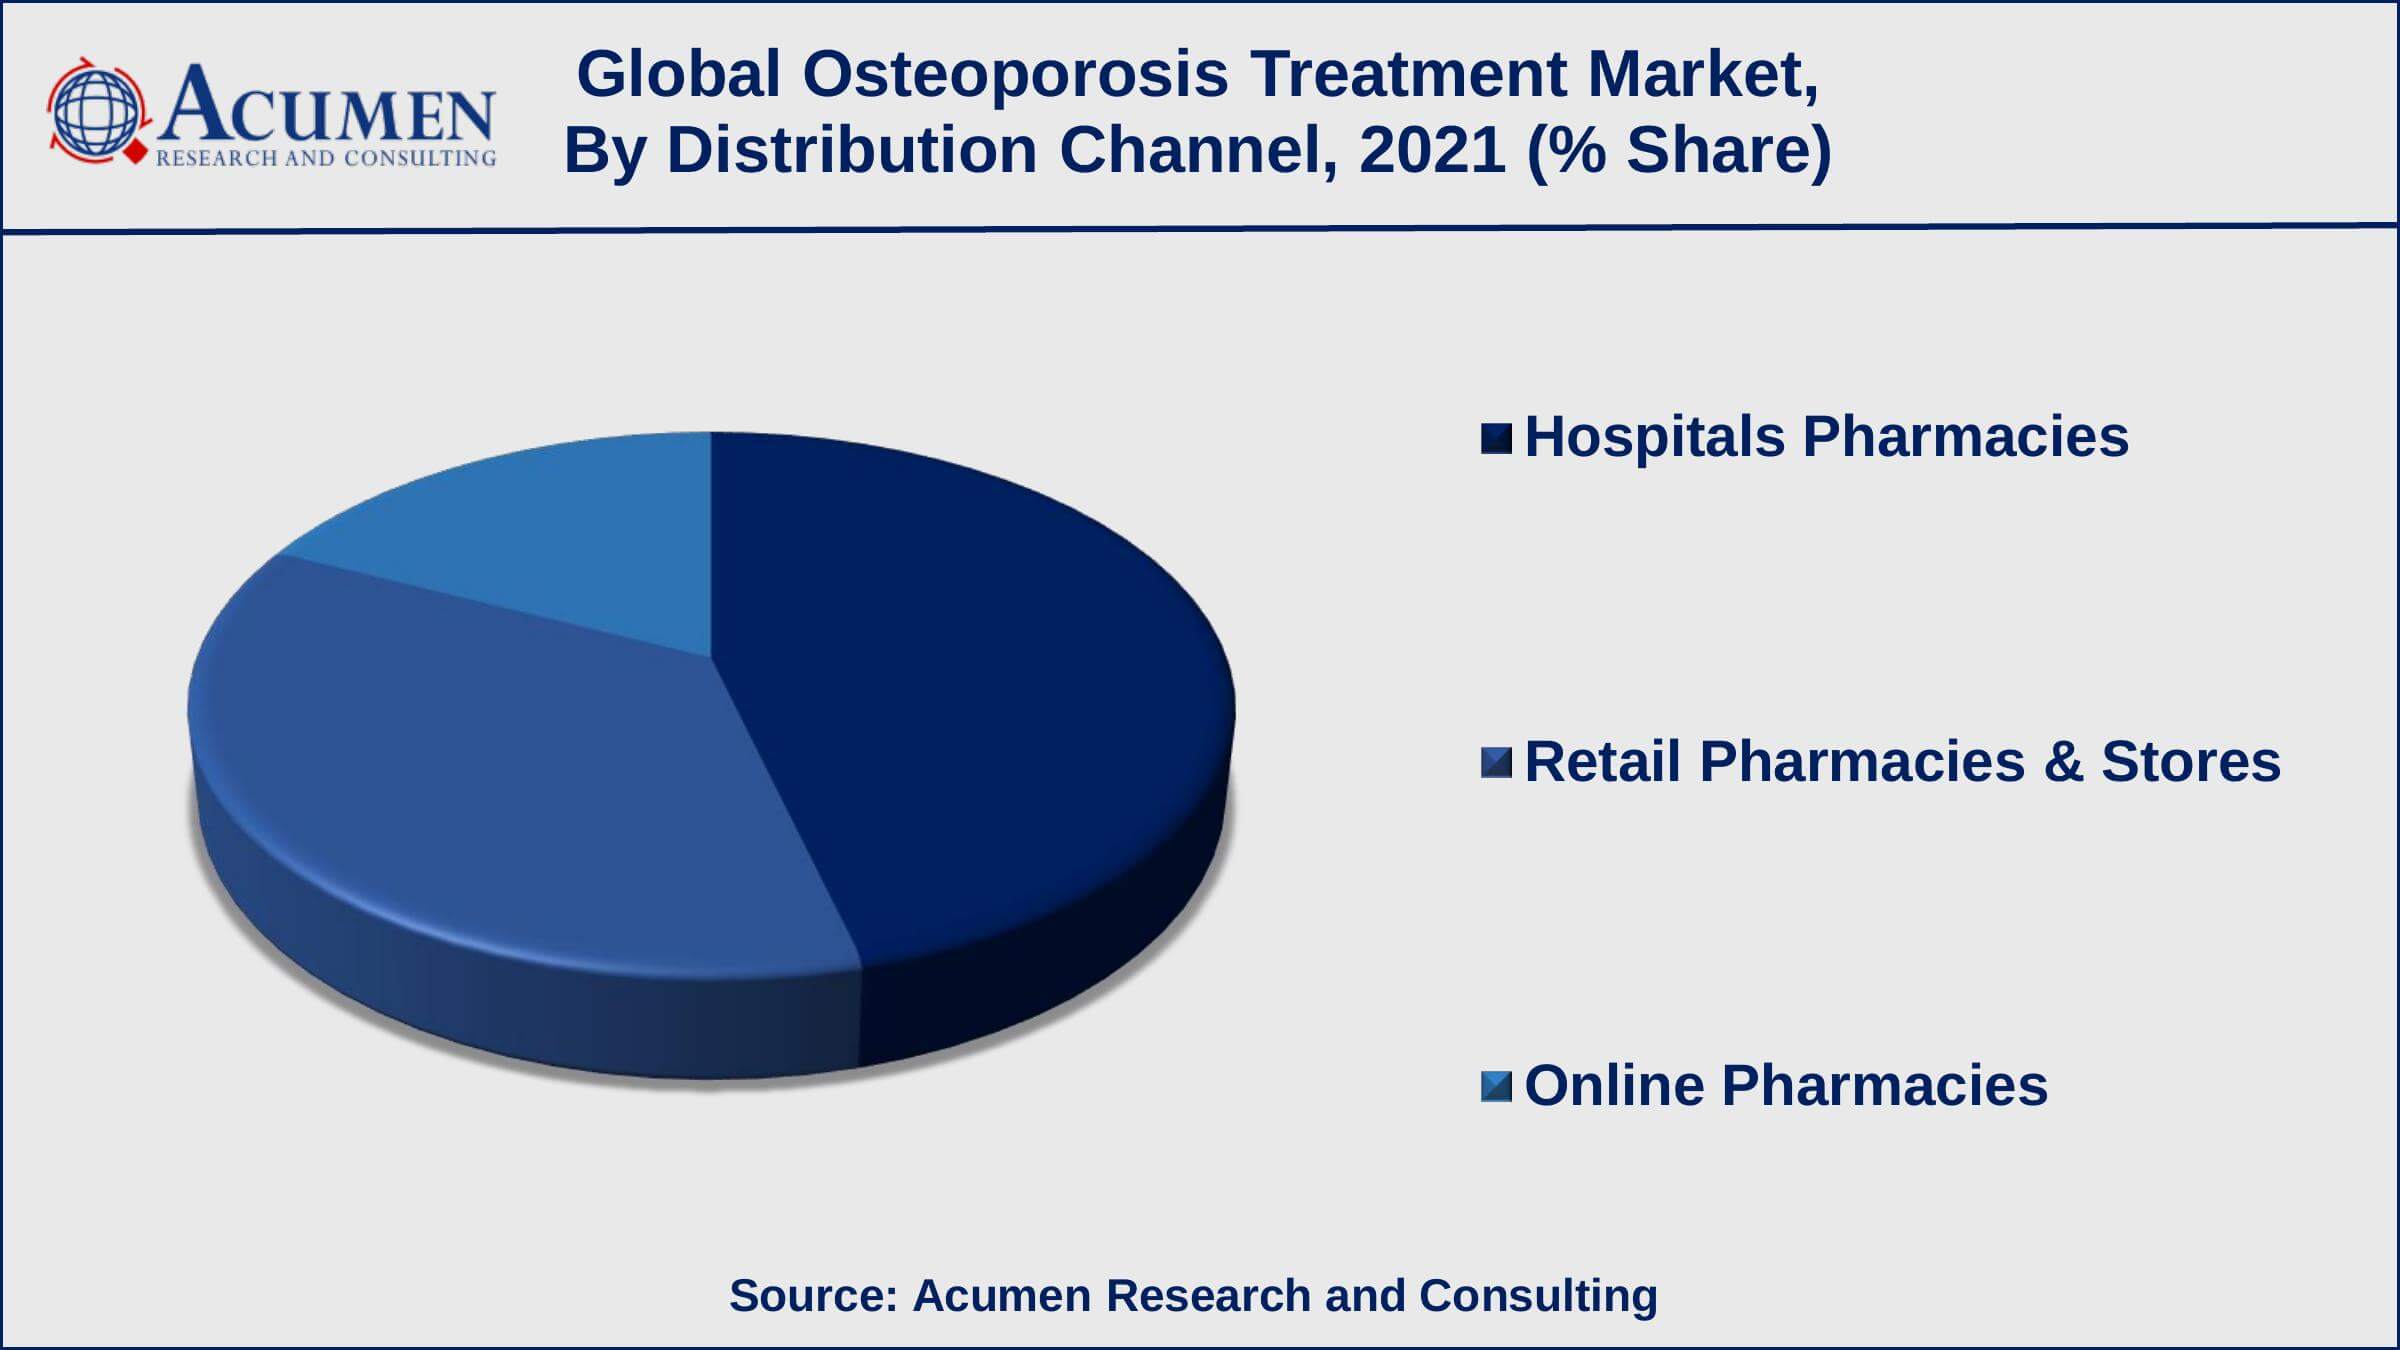 Global Osteoporosis Treatment Market Dynamics